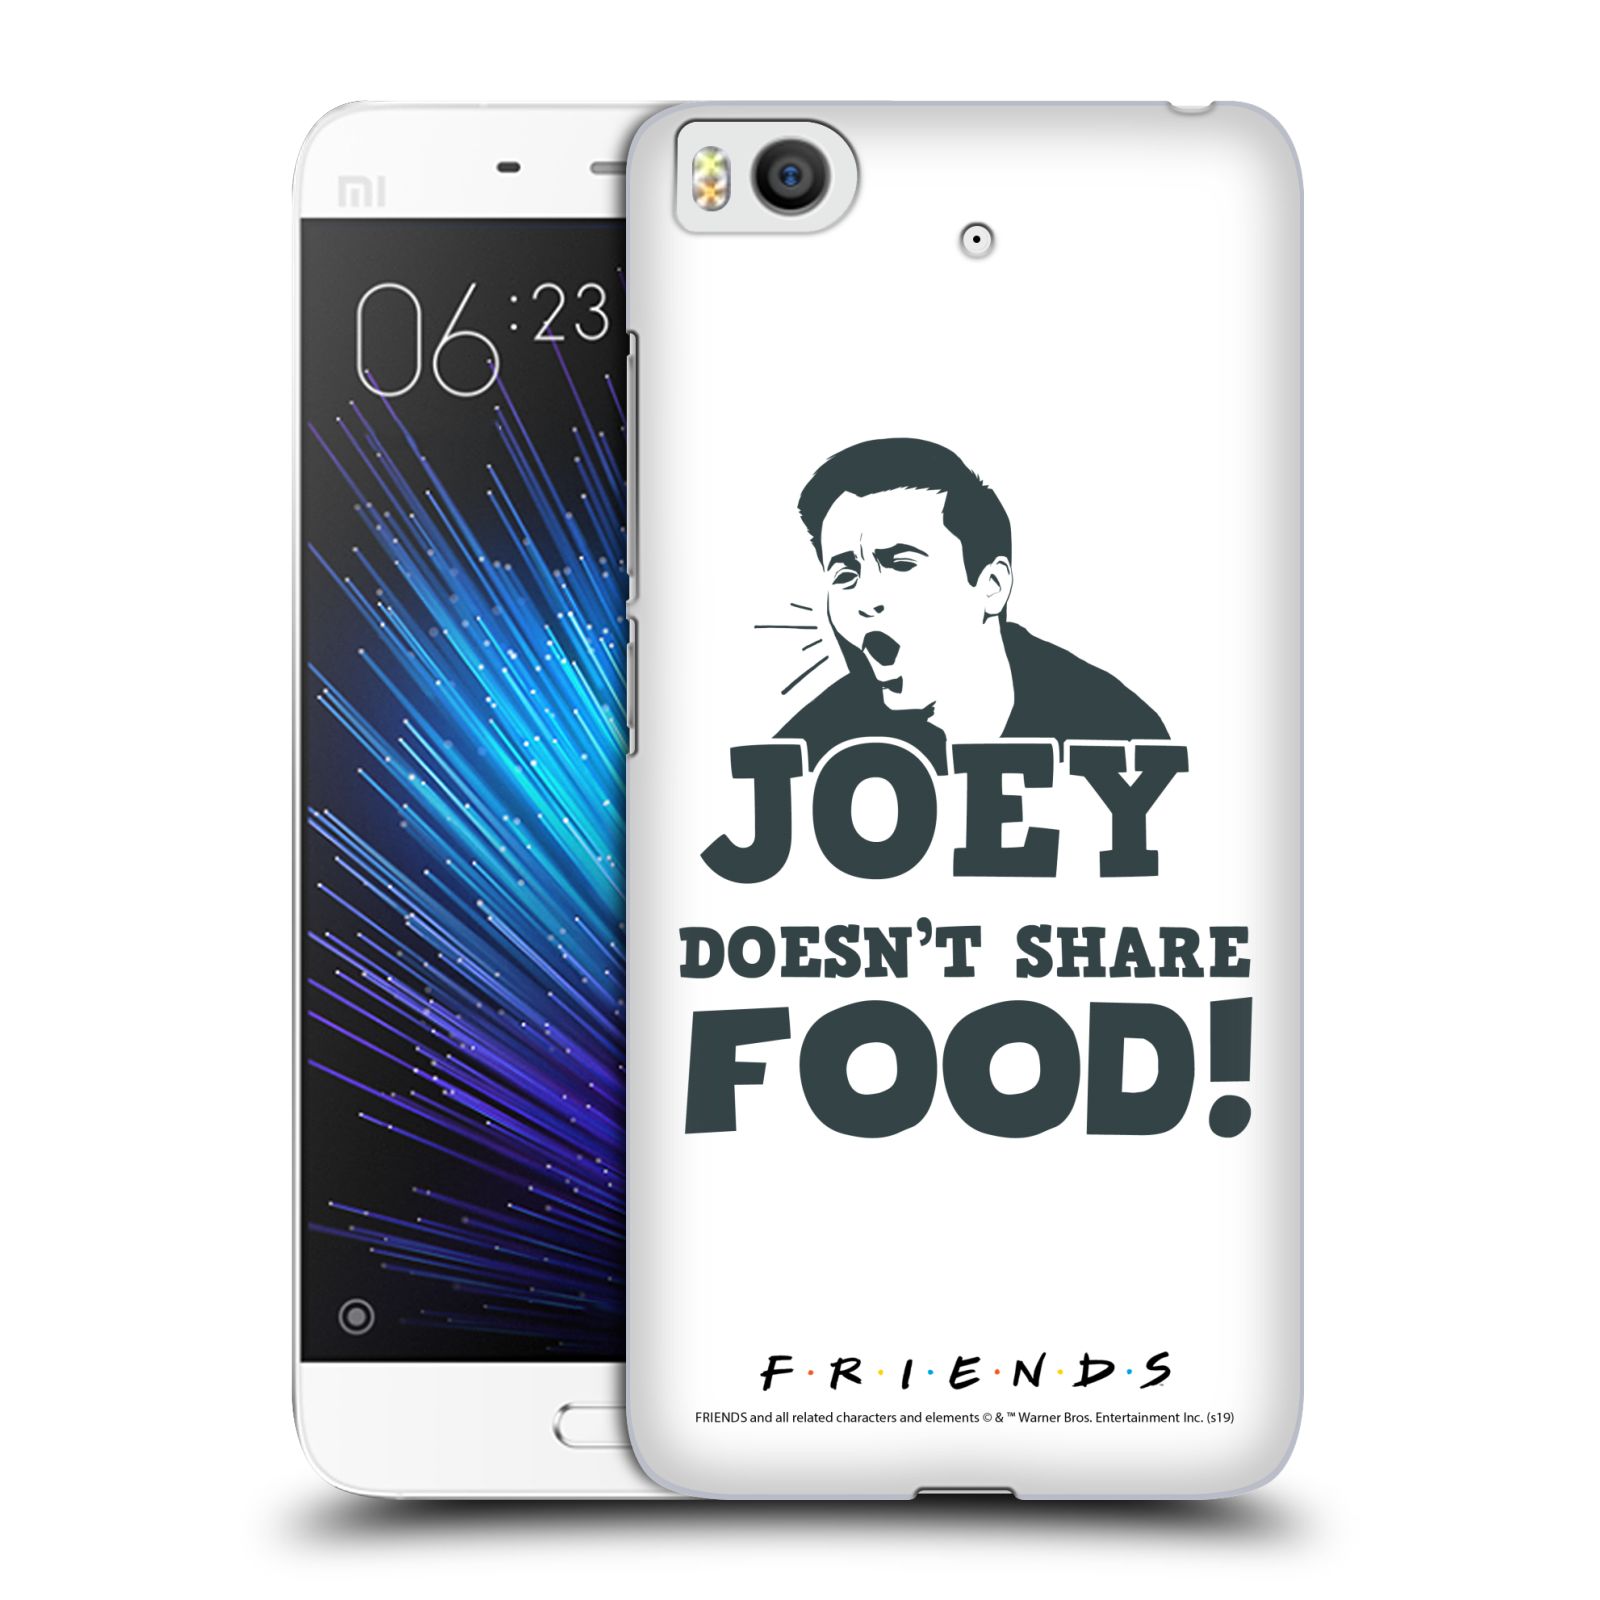 Pouzdro na mobil Xiaomi Mi5s - HEAD CASE - Seriál Přátelé - Joey se o jídlo nedělí